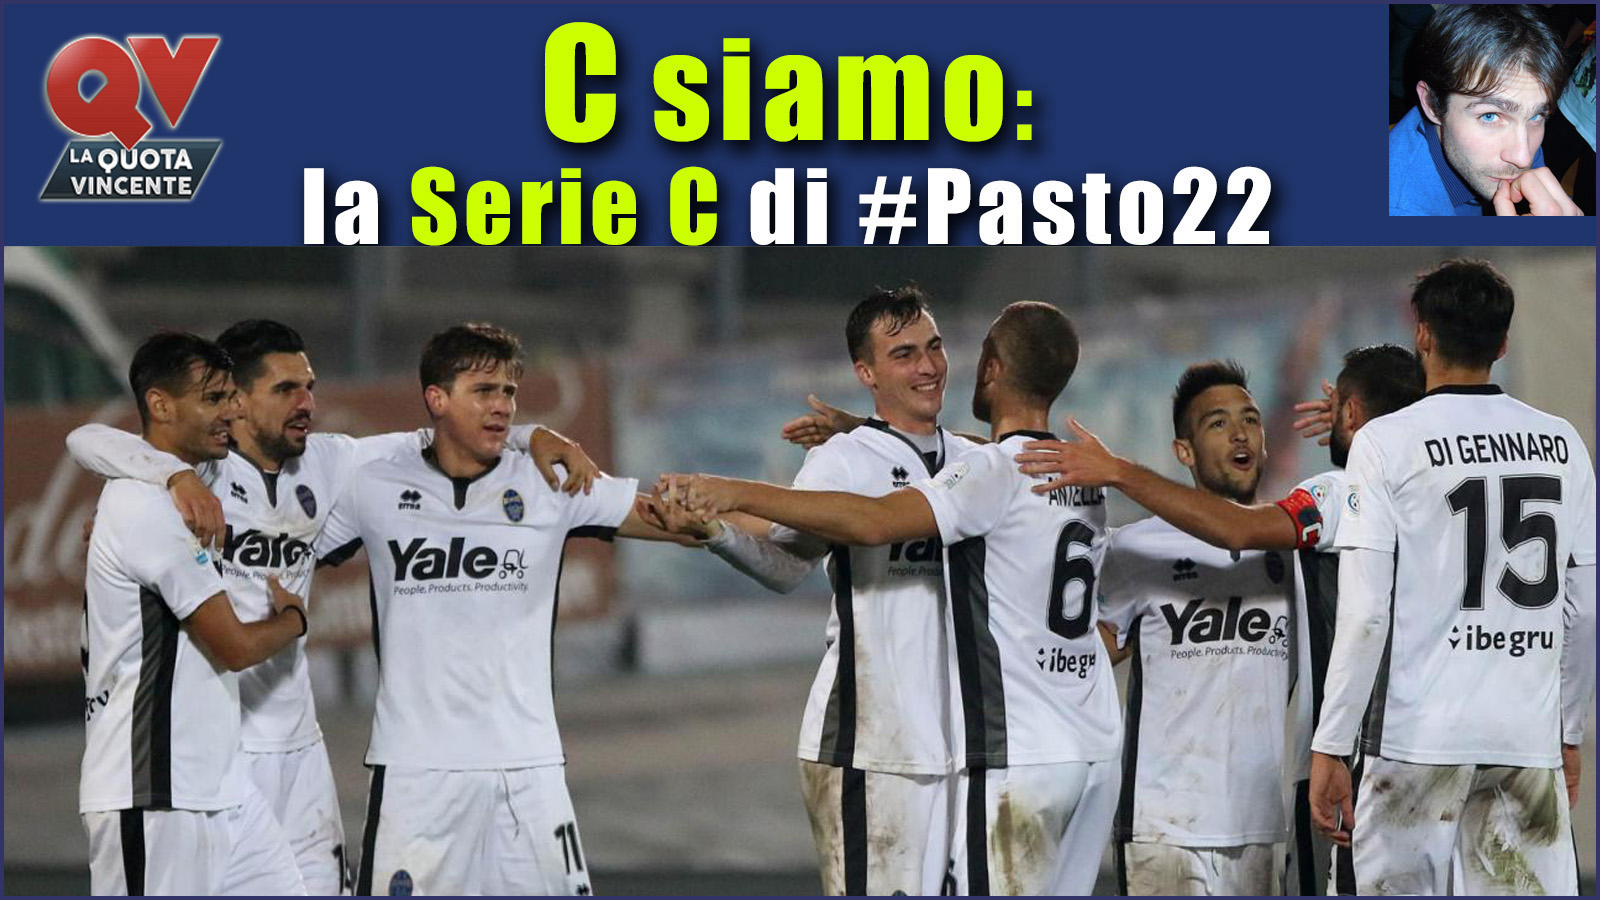 Pronostici Serie C domenica 5 novembre: #Csiamo, il blog di #Pasto22